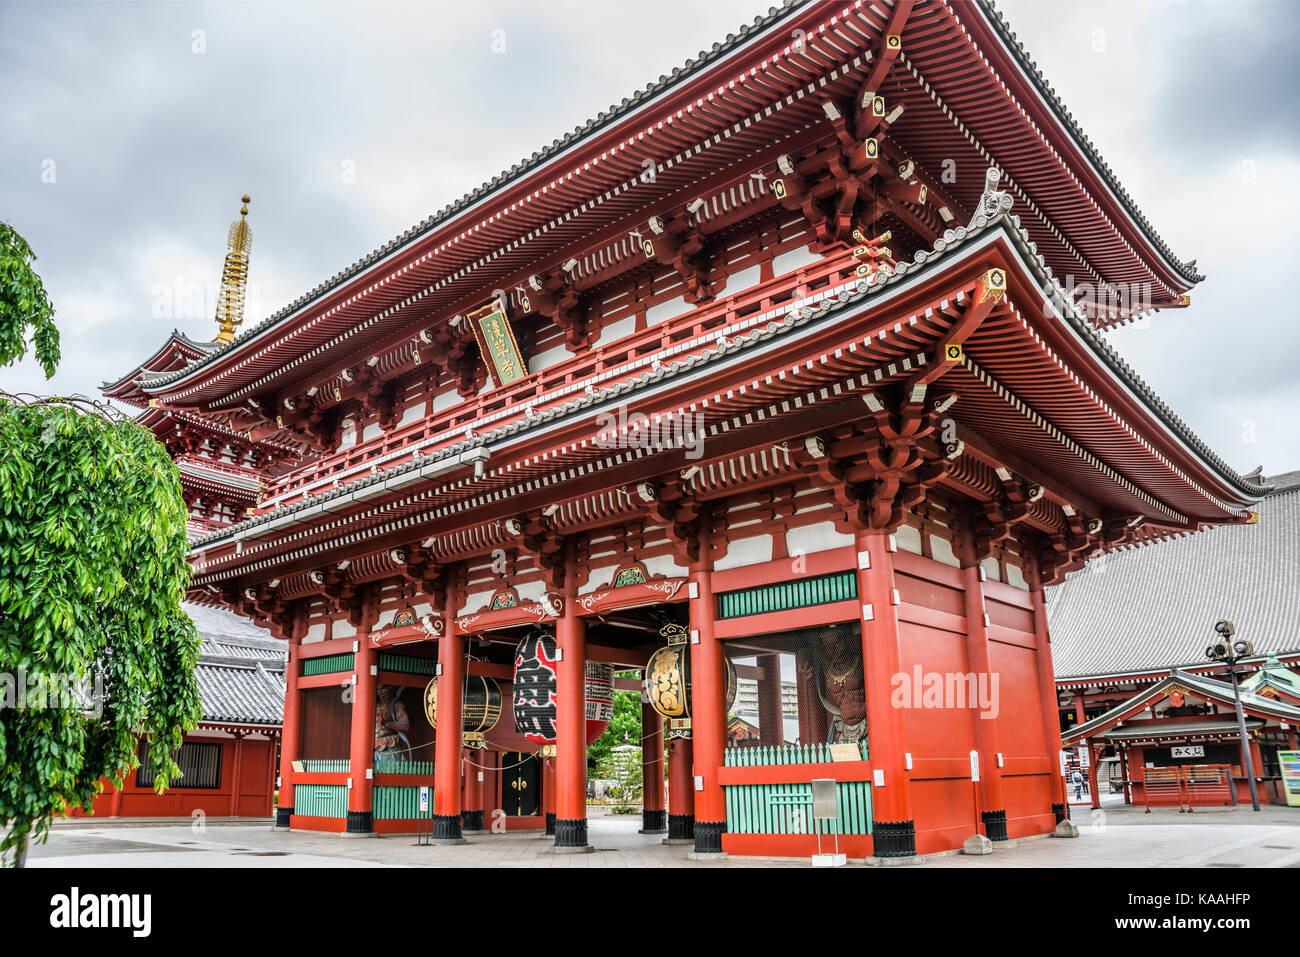 Ancienne entrée Hozomon de l'époque Edo de Sensoji, également connue sous le nom de Temple Asakusa Kannon, Asakusa, Tokyo, Japon Banque D'Images